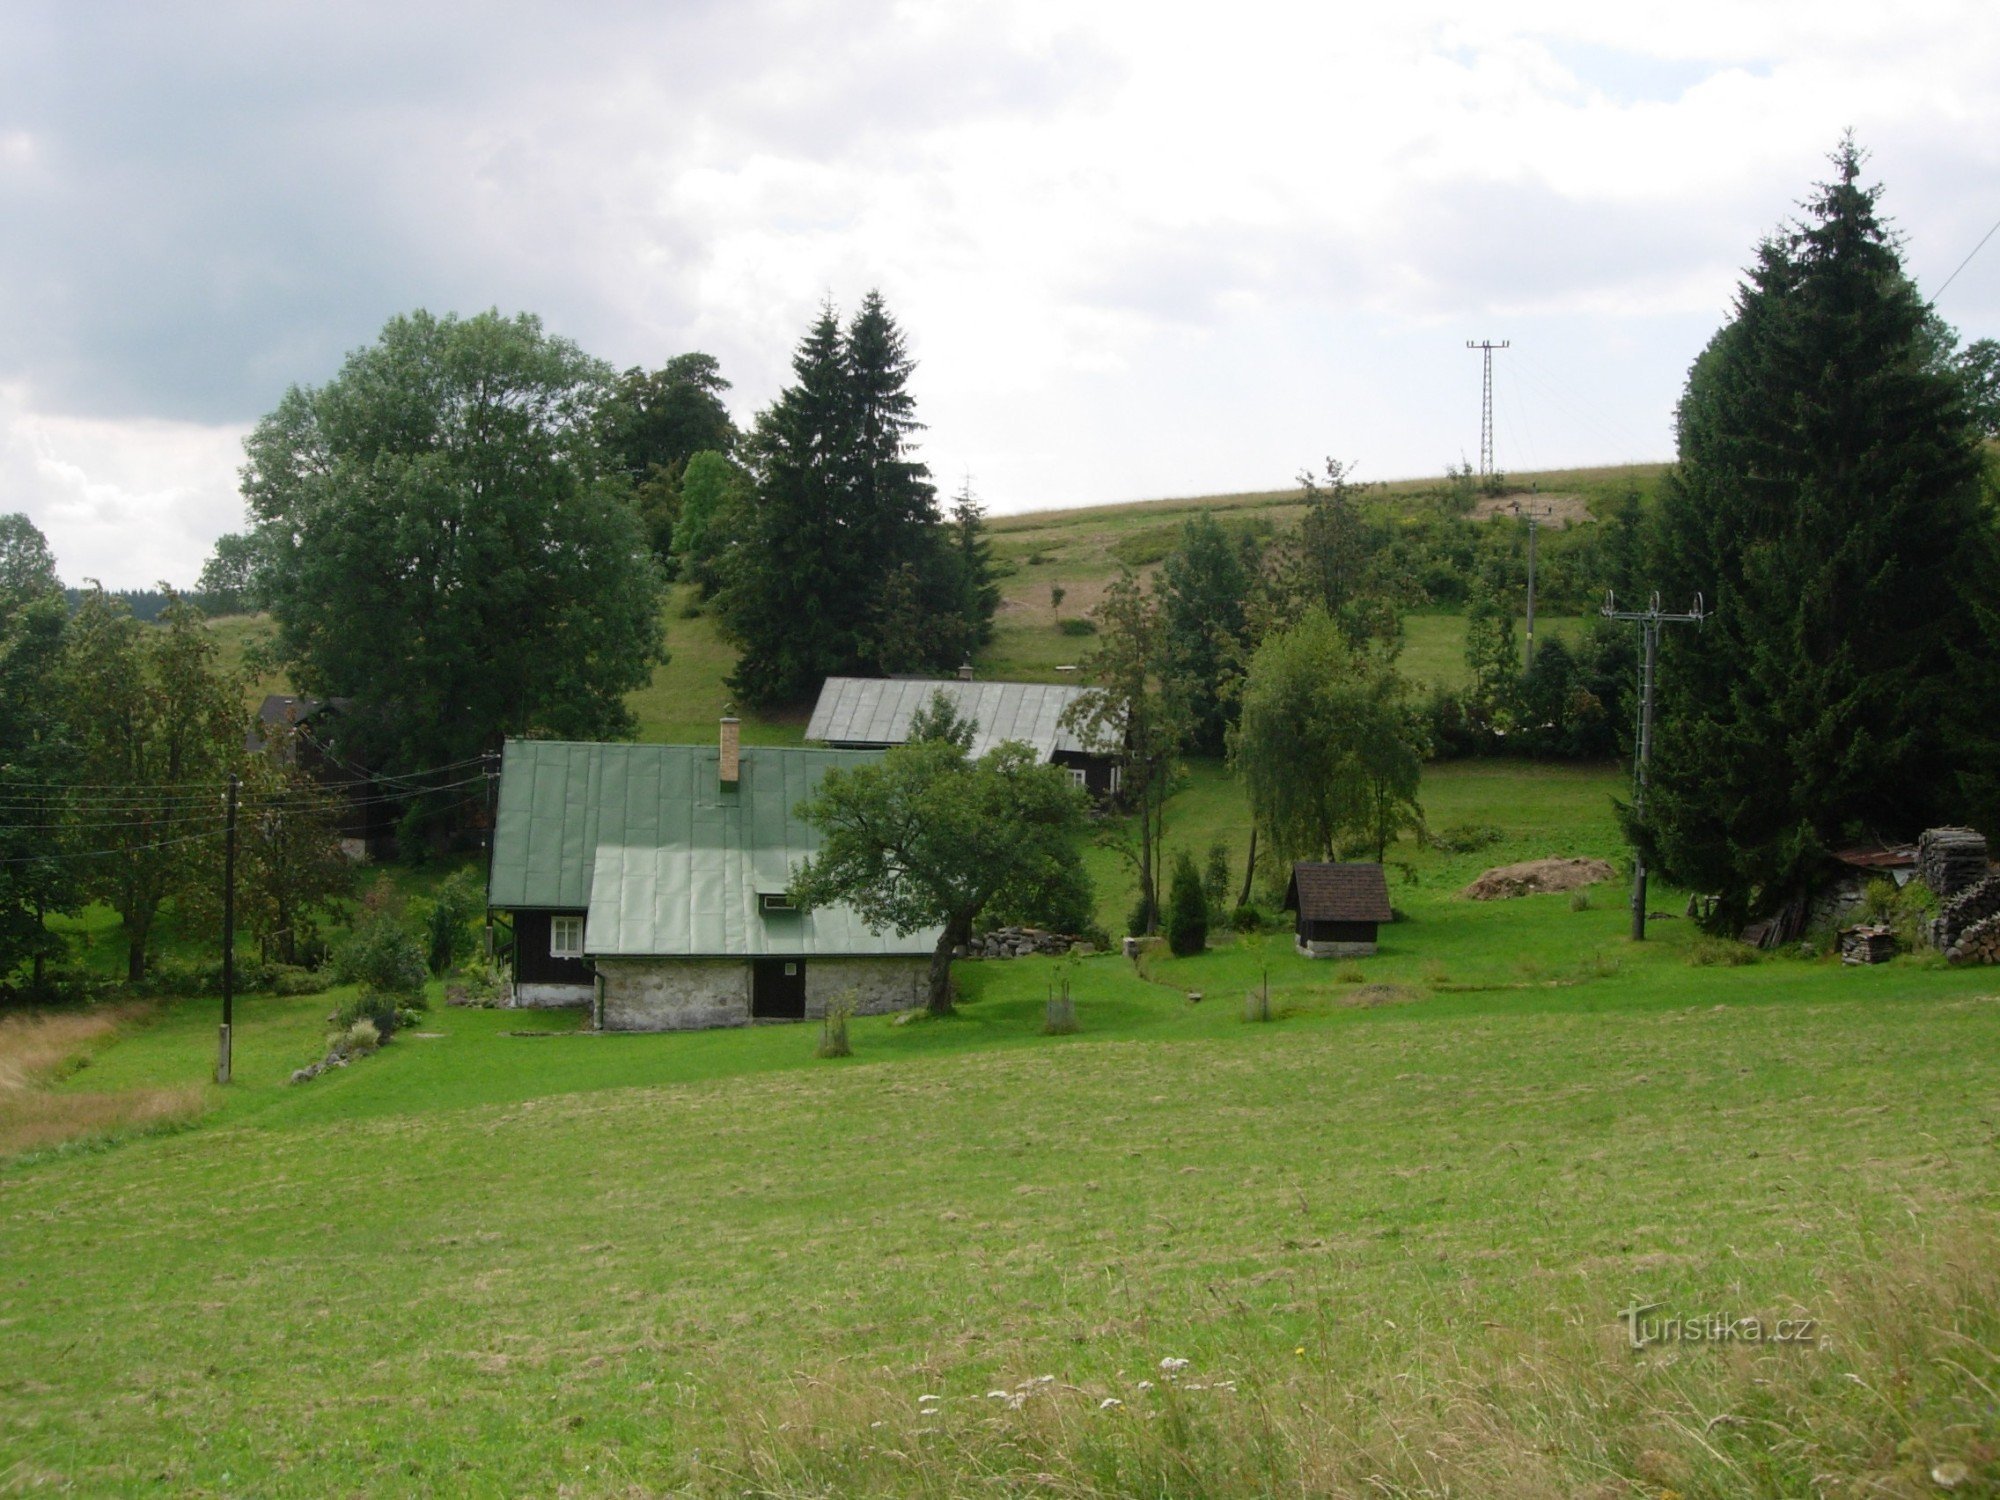 Τα σπίτια του Nýč